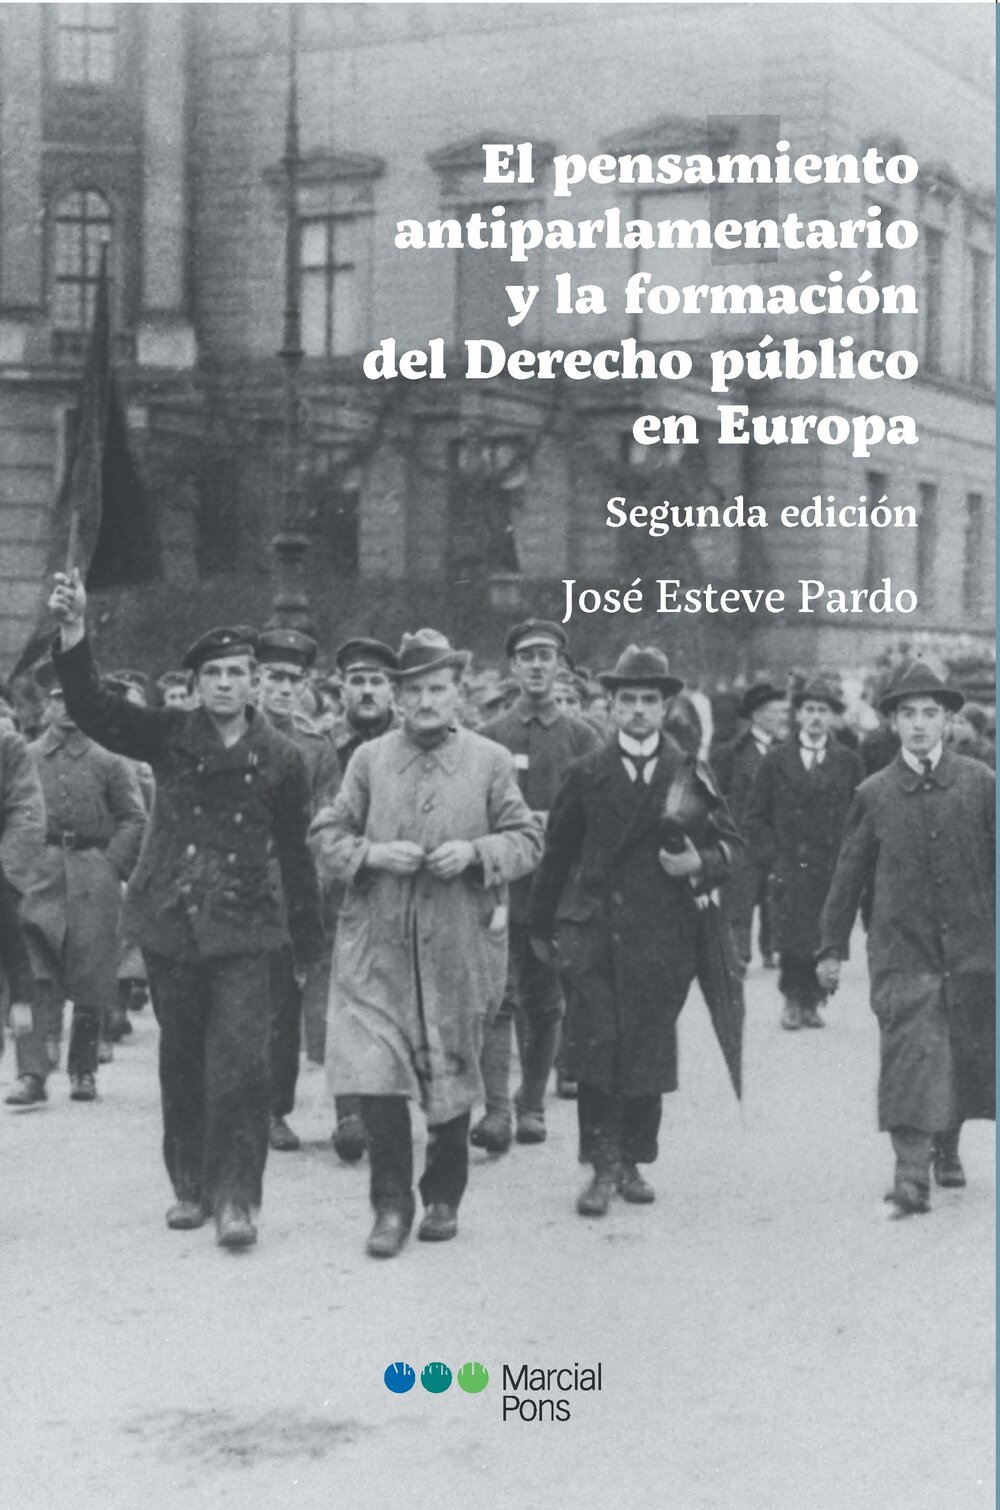 El pensamiento antiparlamentario y la formación del Derecho público en EuropaEsteve Pardo, José